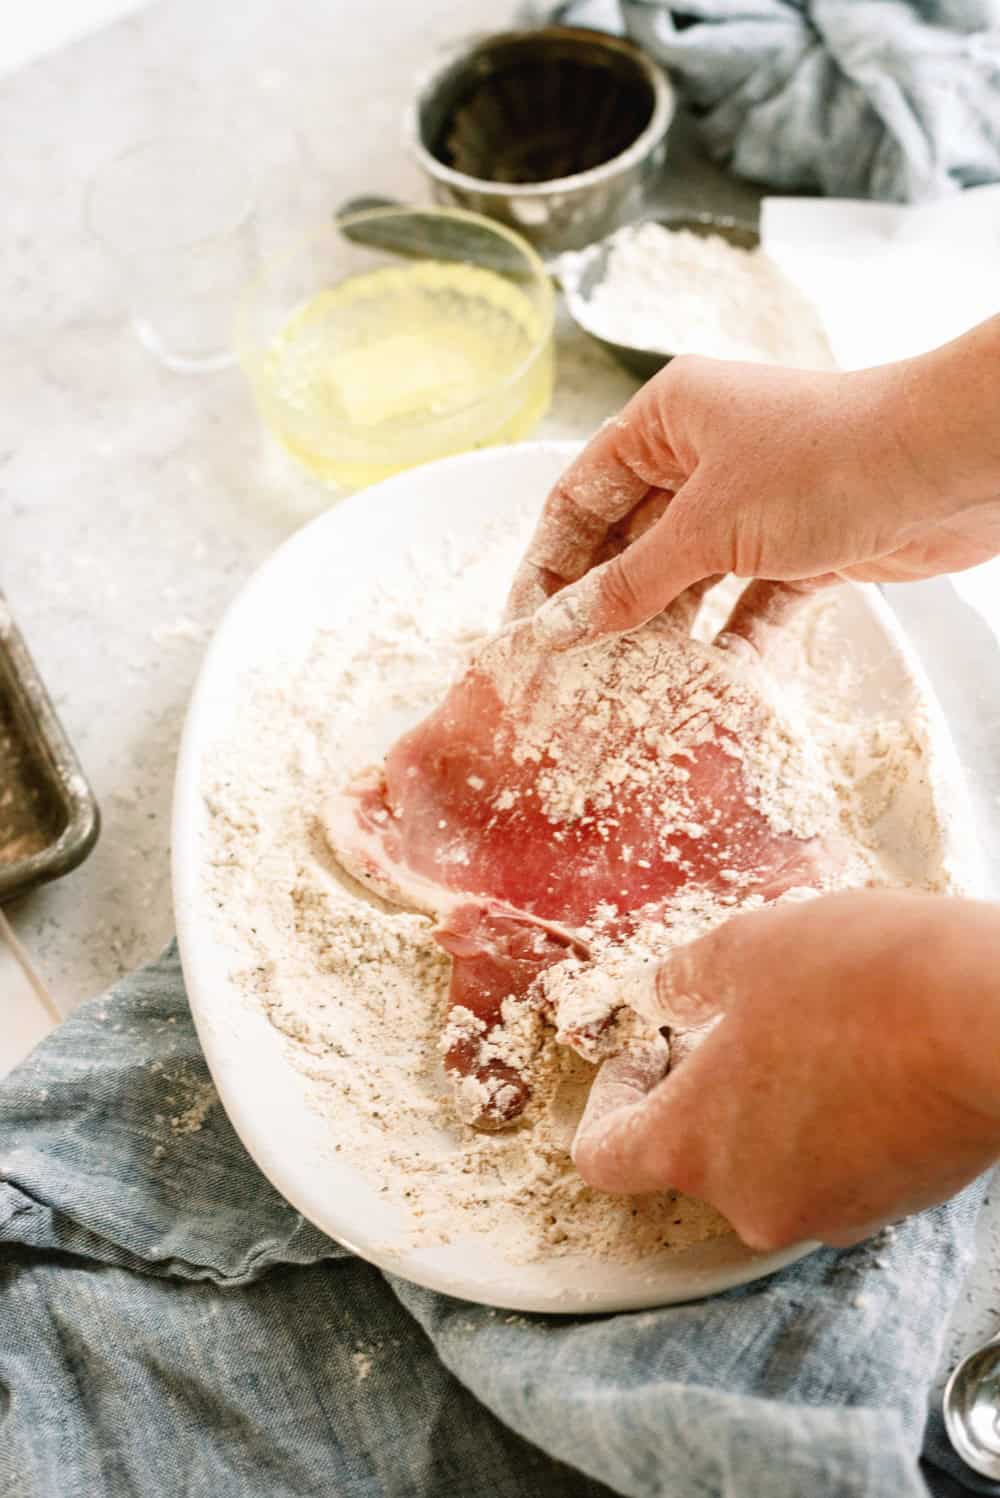 Dredging pork chop in flour for frying